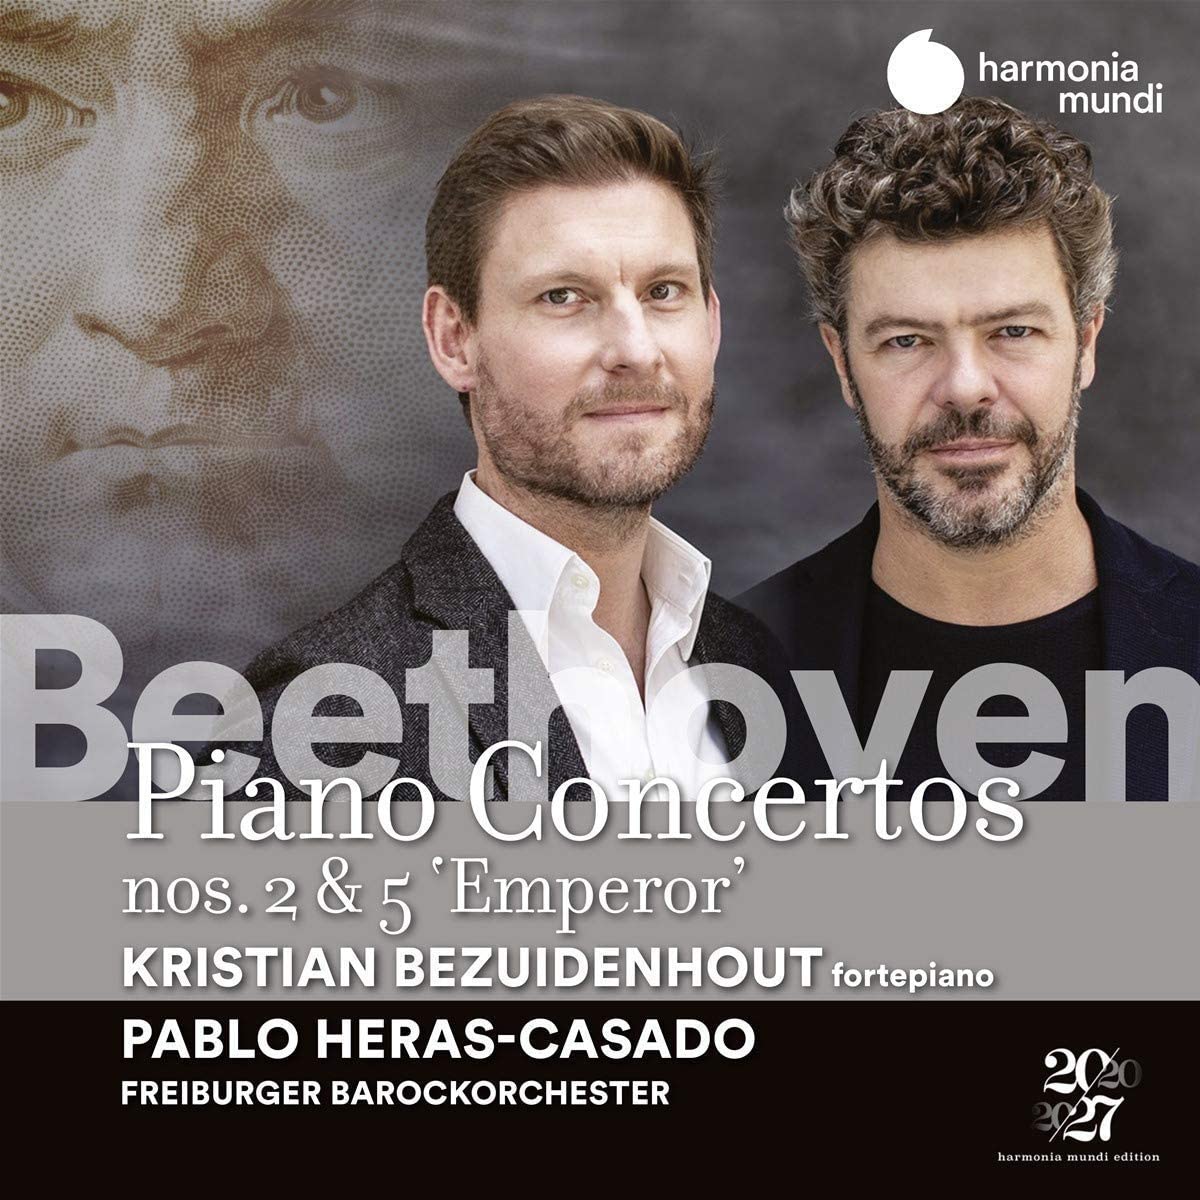 Beethoven: Piano Concertos Nos. 2 & 5 - Emperor | Kristian Bezuidenhout, Pablo Heras-Casado, Freiburger Barockorchester